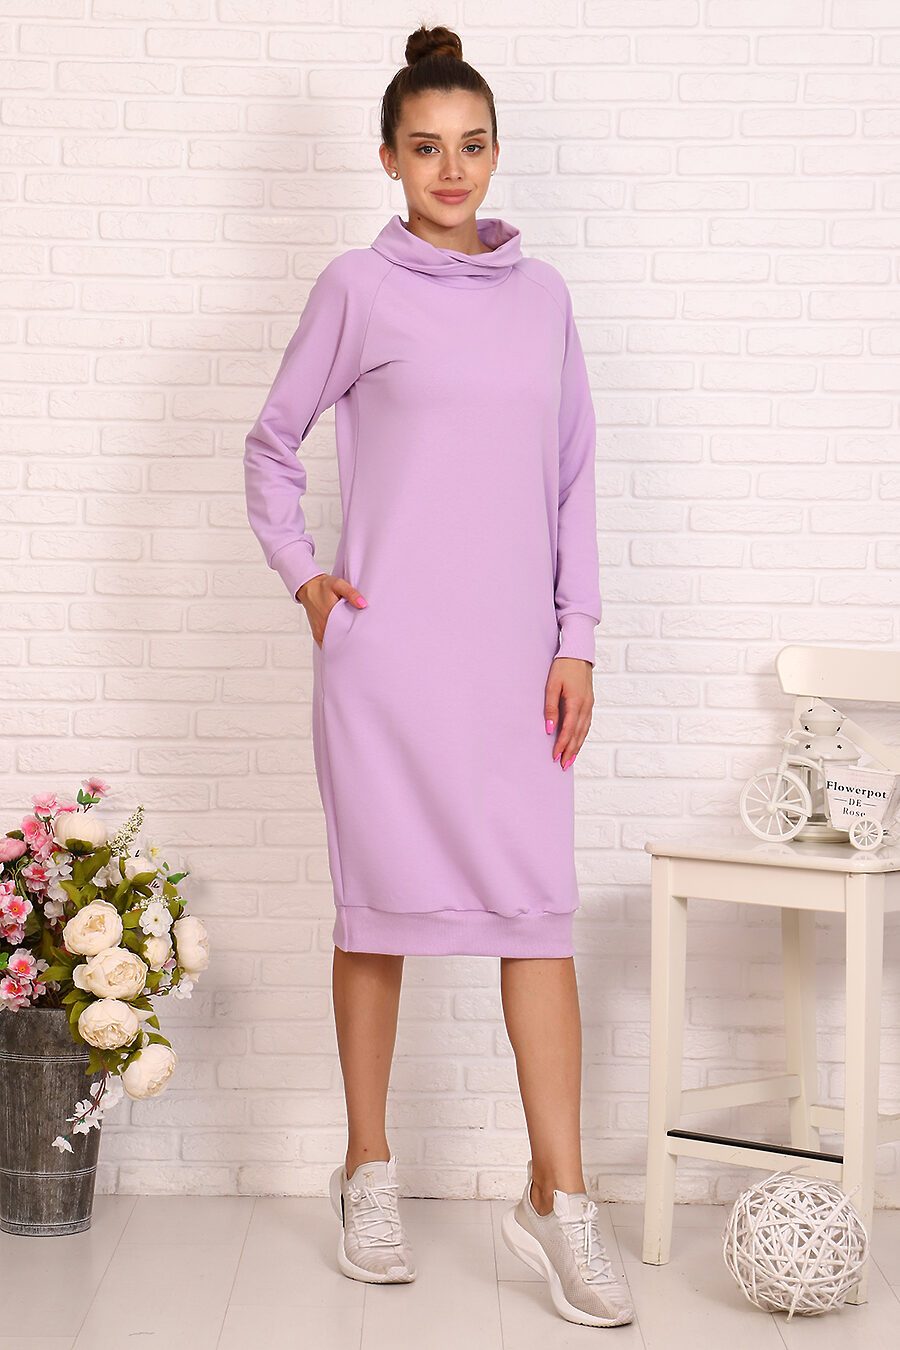 Платье 24227 для женщин НАТАЛИ 717756 купить оптом от производителя. Совместная покупка женской одежды в OptMoyo